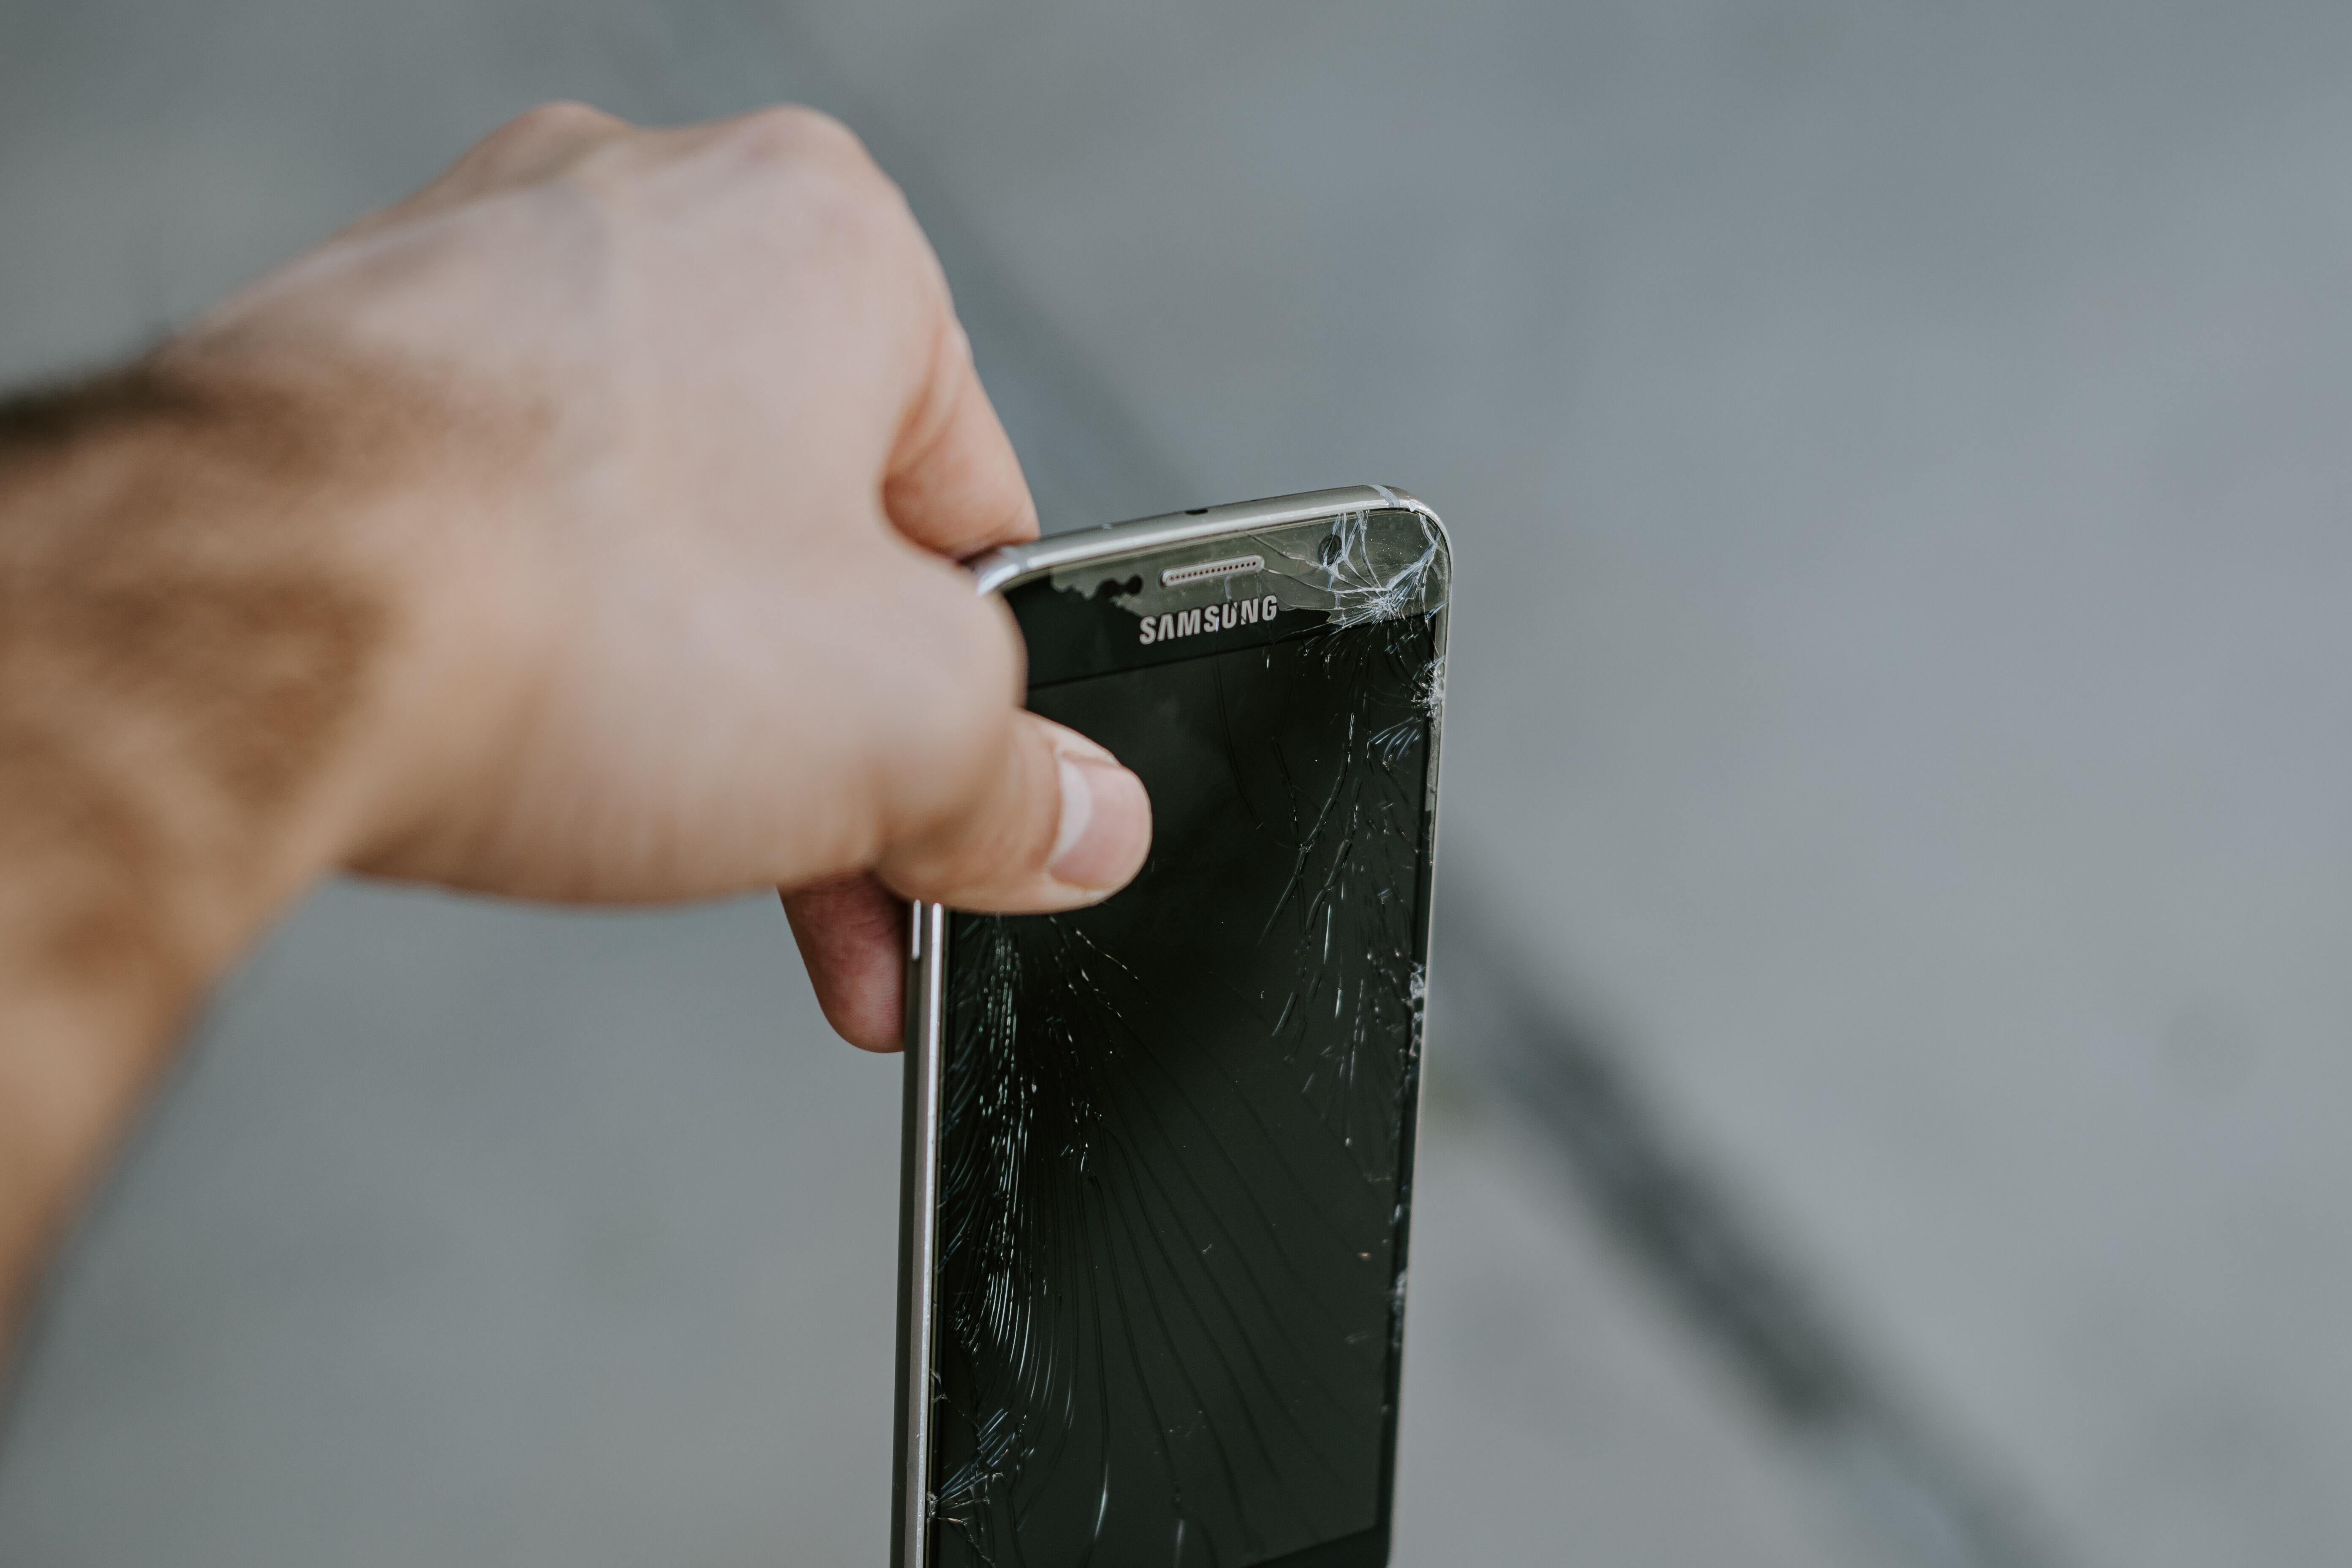 Oops! - Broken Phone Showdown – send us photos of your broken phones!